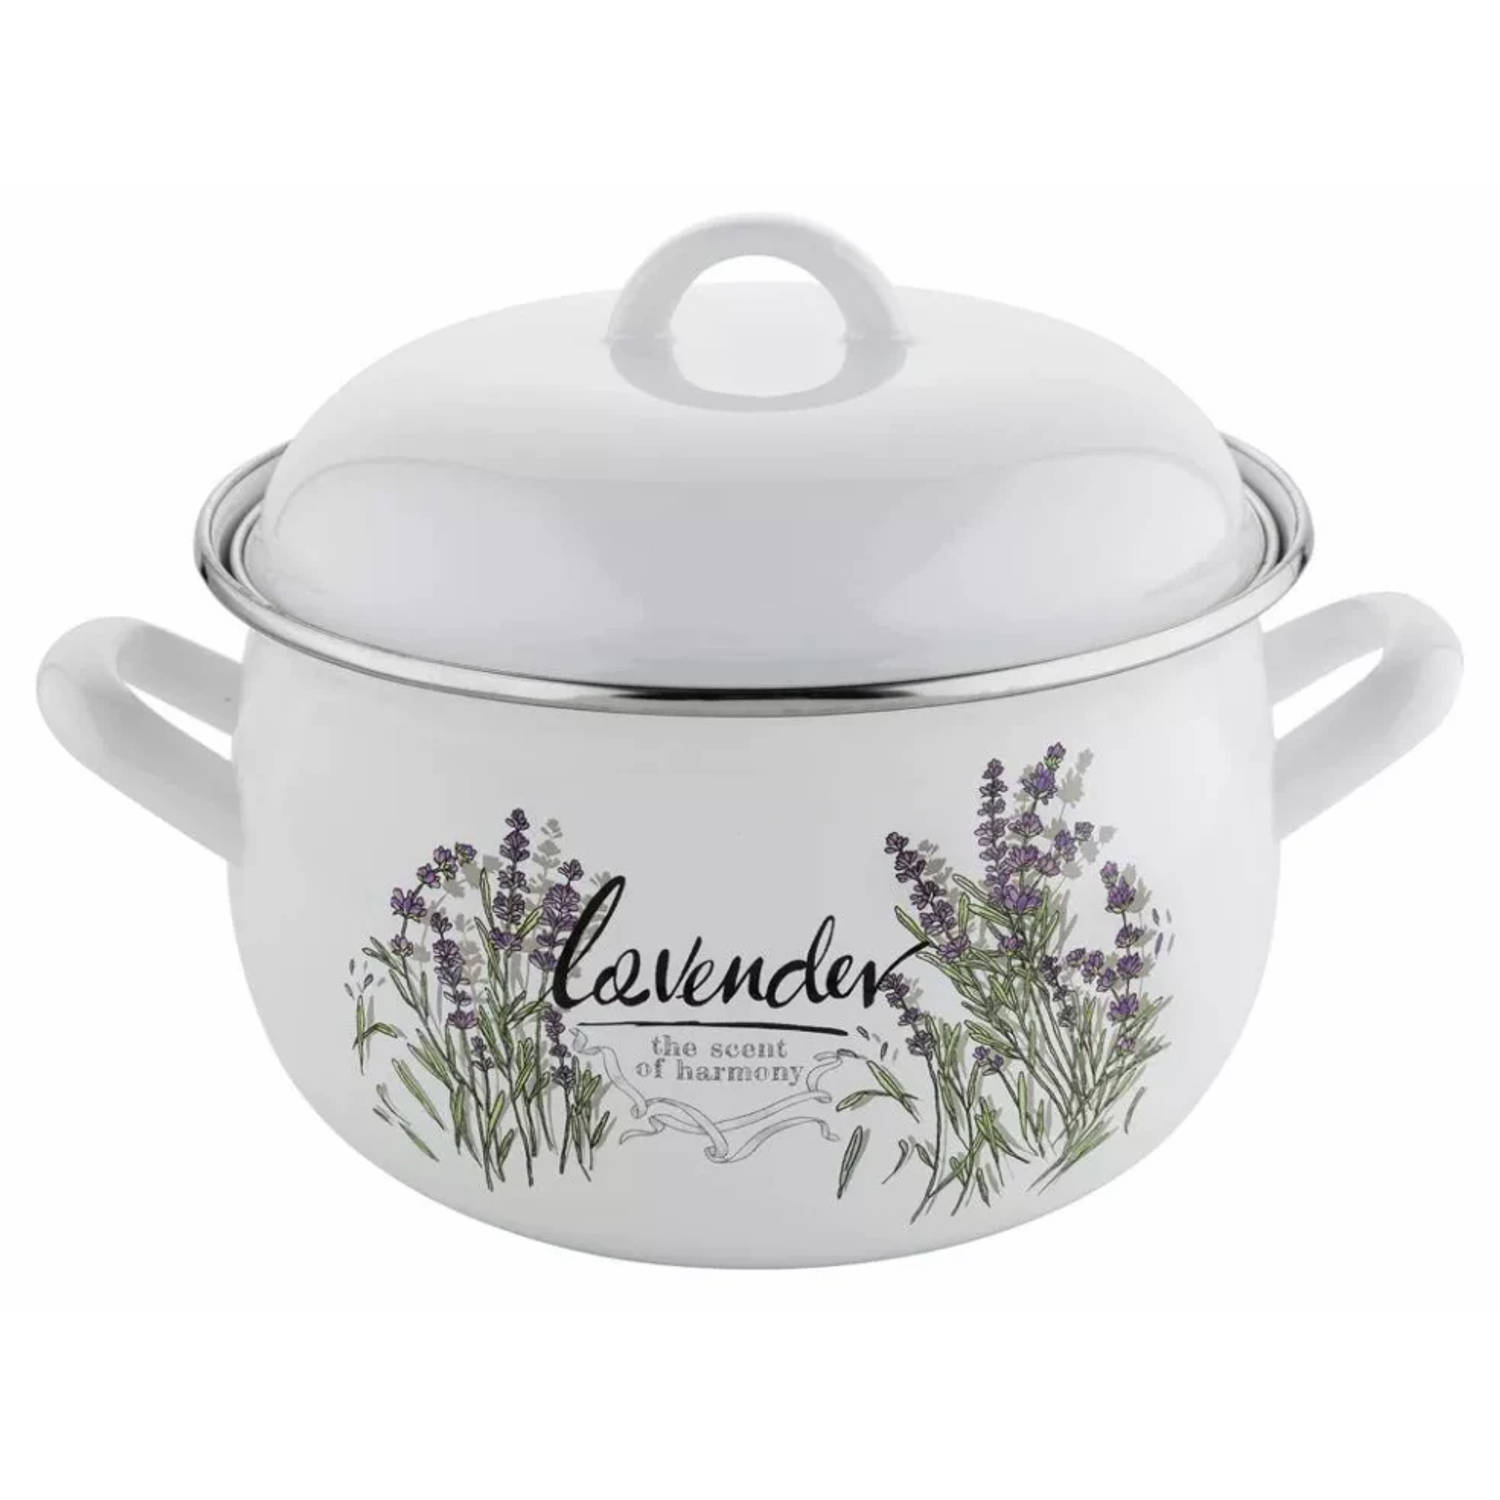 Emalia Retro Lavendel Geëmailleerde Vintage Kookpan 20 Cm 4.1 Liter Wit / Paars